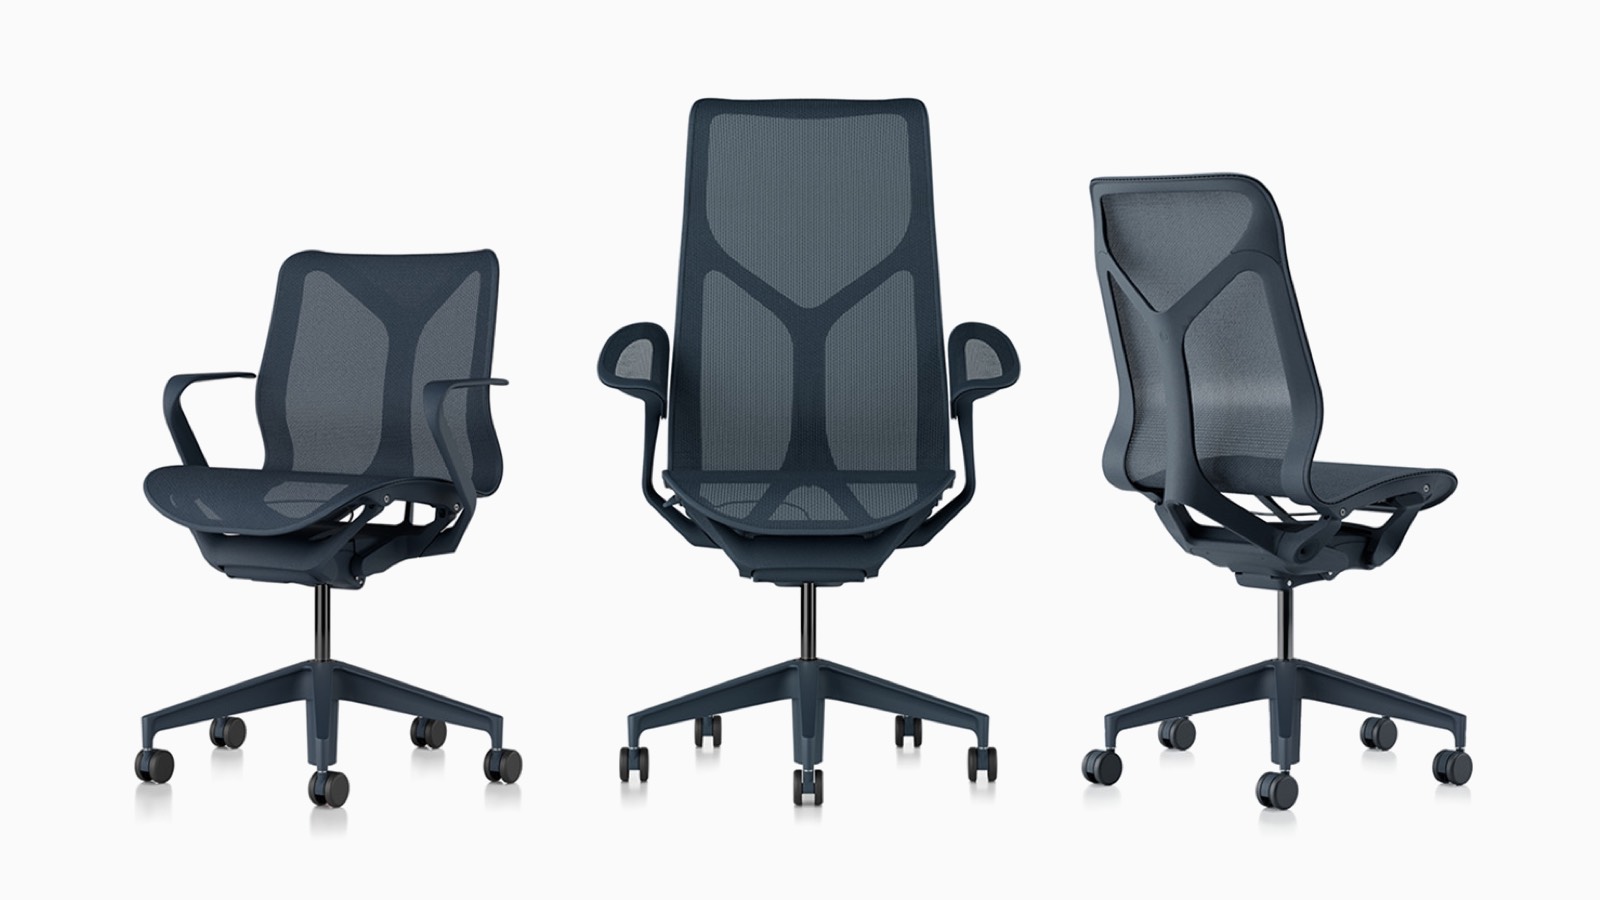 Cosm ergonomische Bürostühle mit niedriger Rückenlehne, hoher Rückenlehne und mittlerer Rückenlehne mit Aufhängematerial, Untergestellen und Rahmen in Nightfall marineblau.